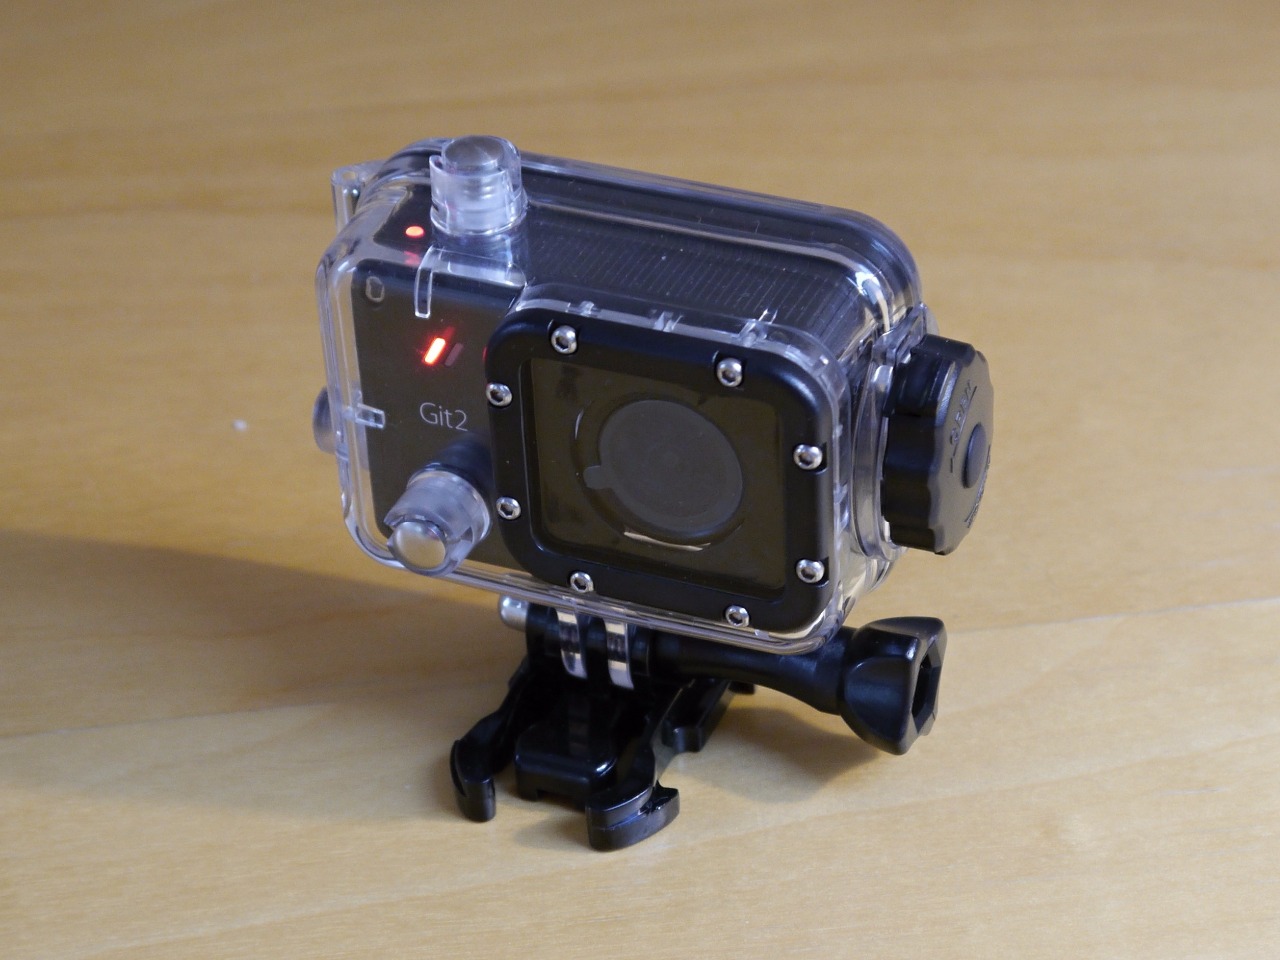 Sportovní kamera GitUp Git2